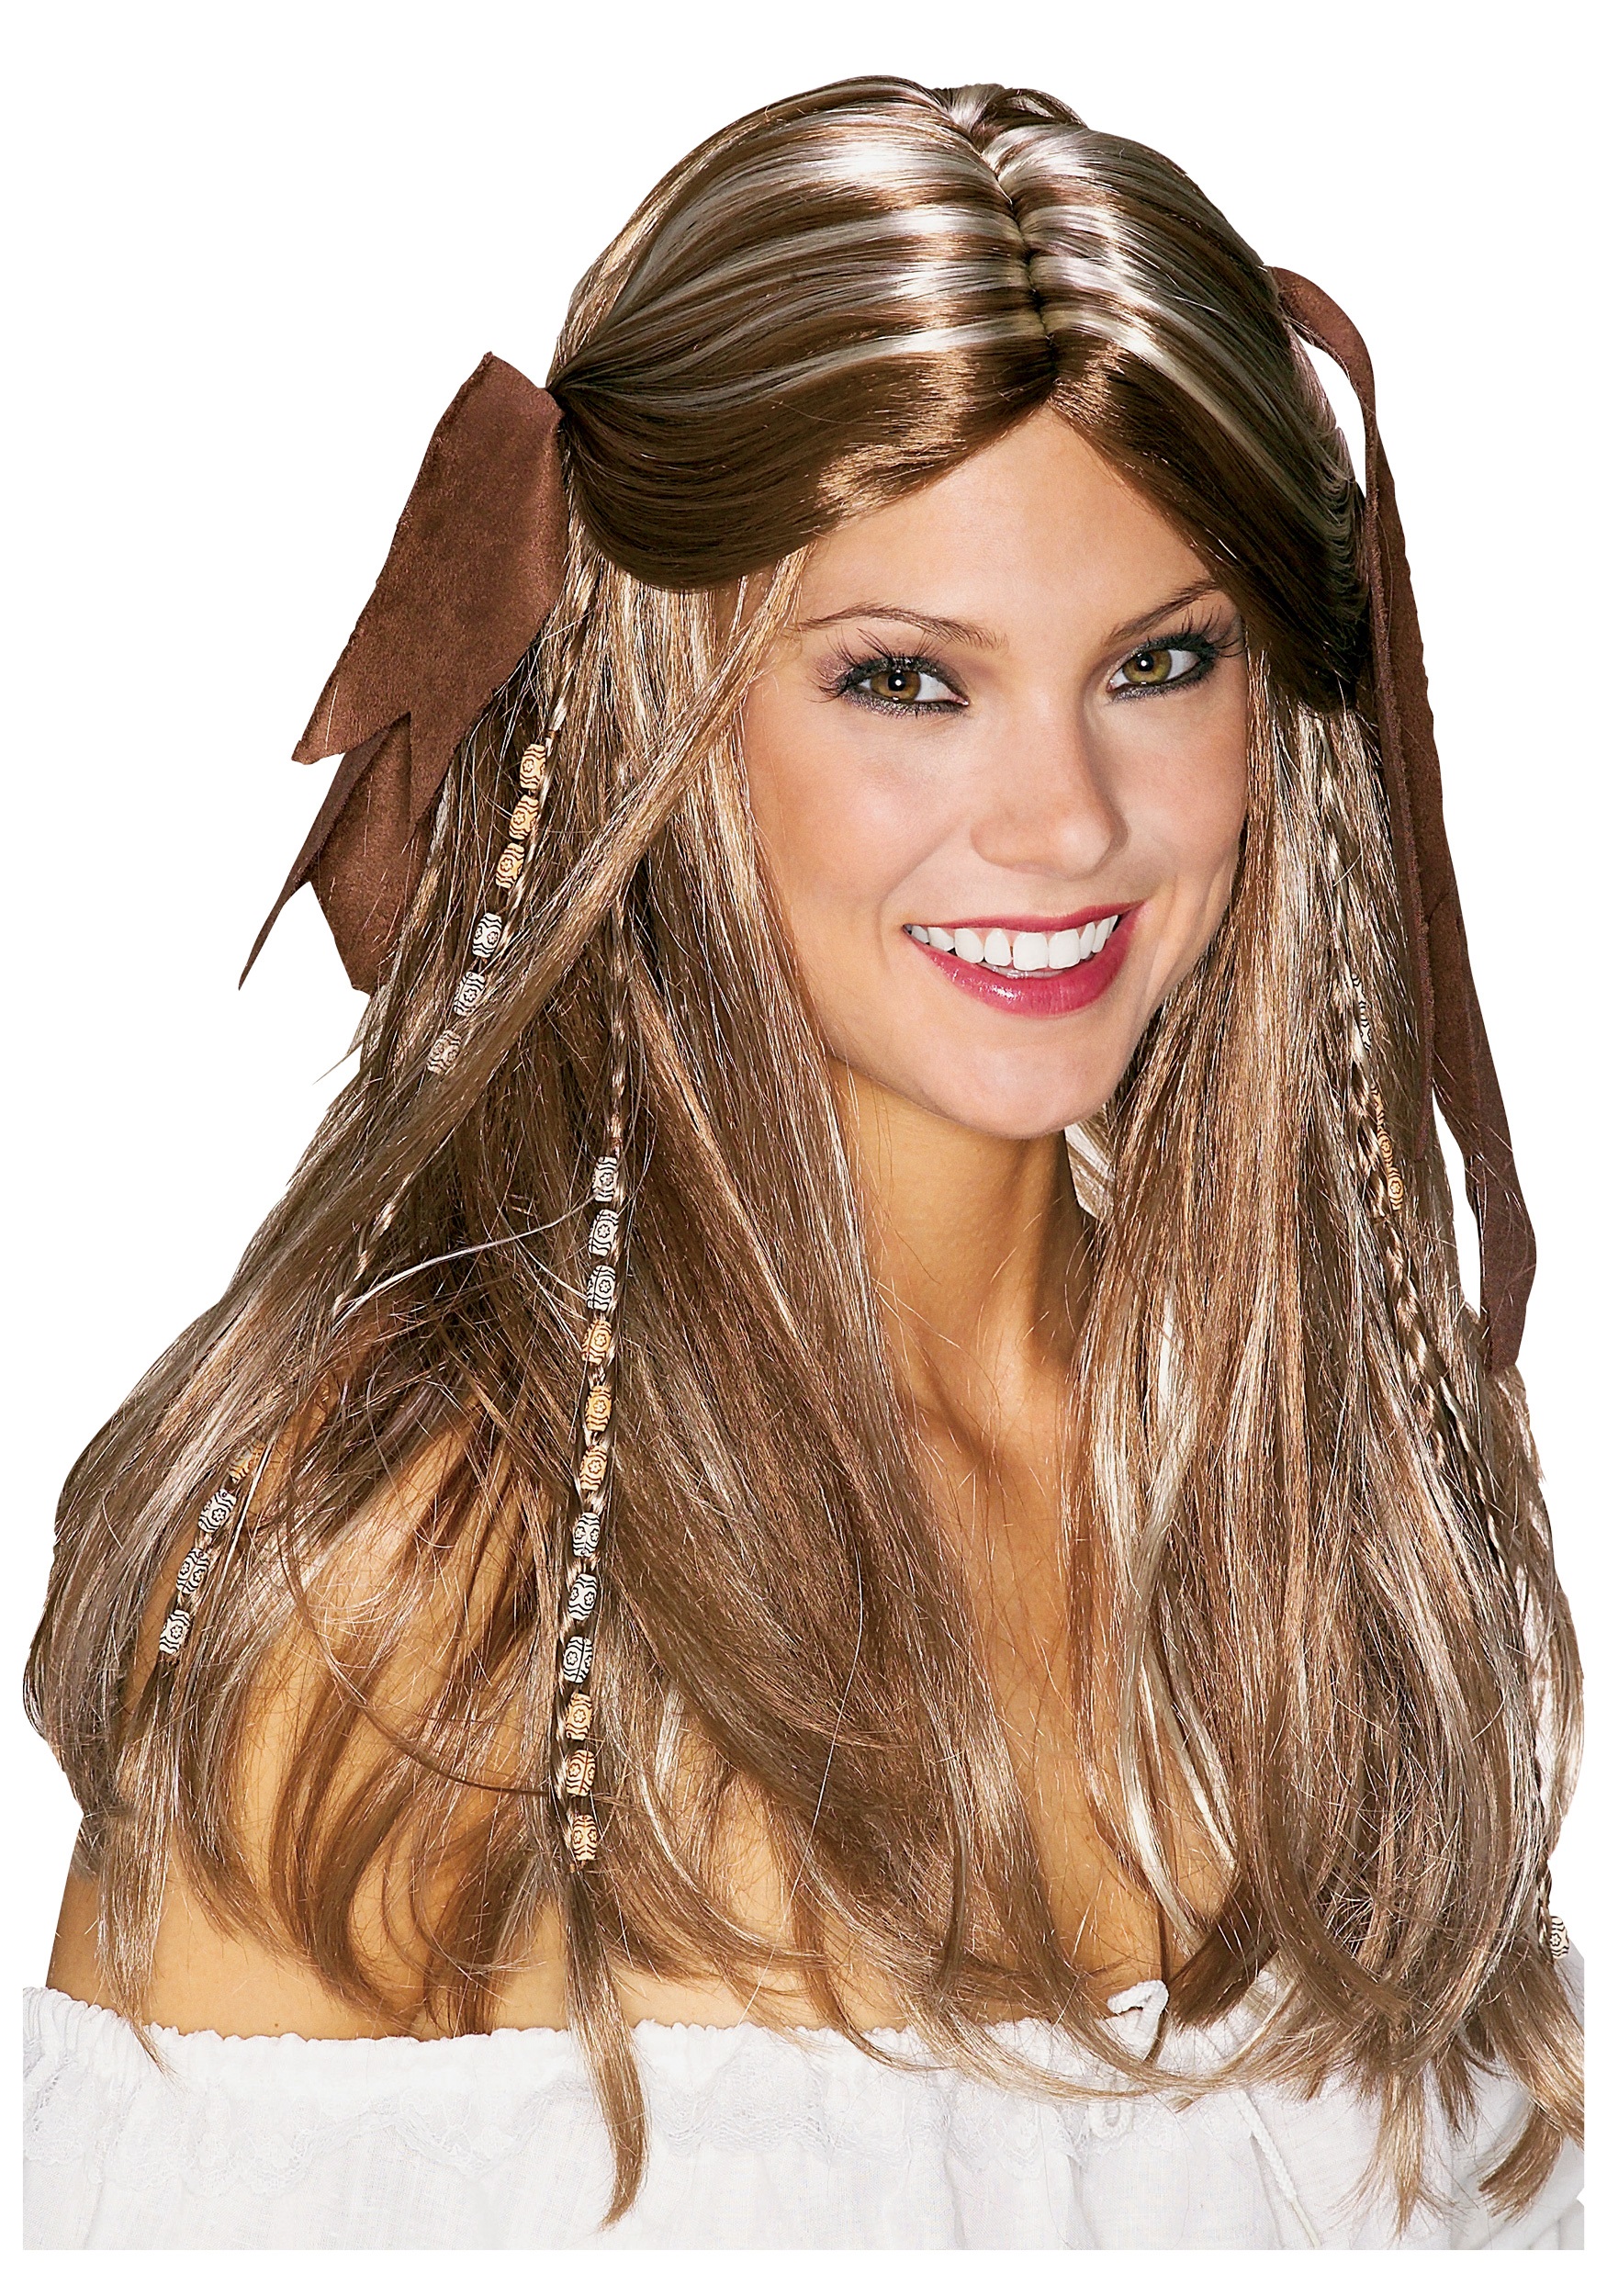 pirate woman hair